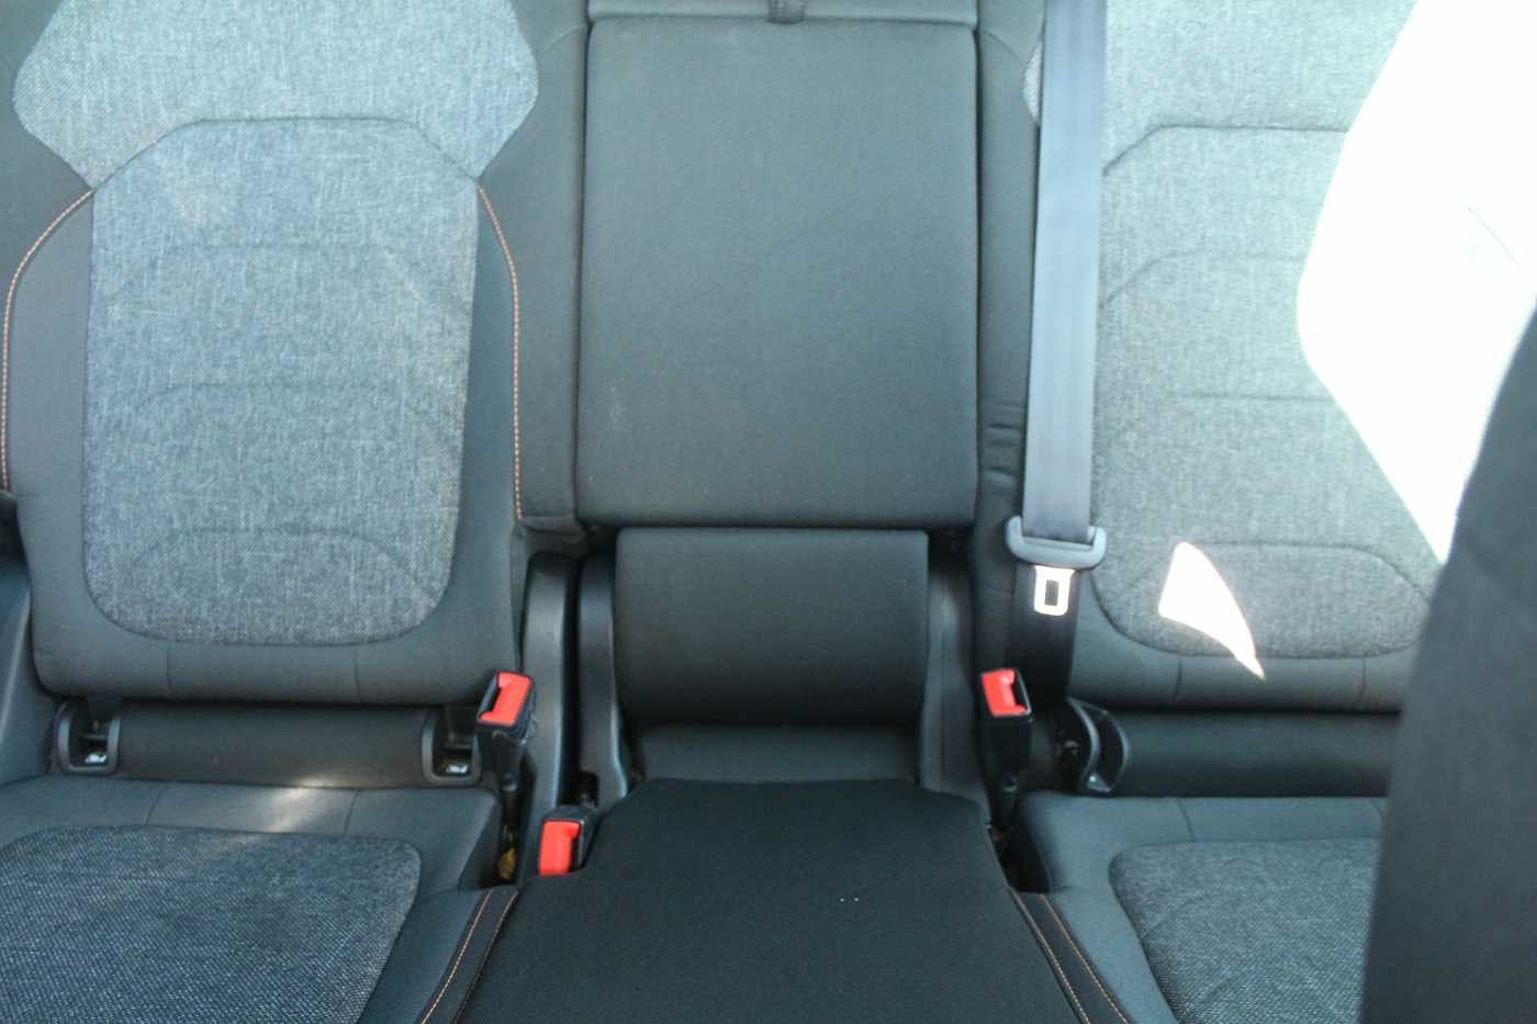 SKODA Kodiaq 1.5 TSI (150ps) SE Drive (7 seats)